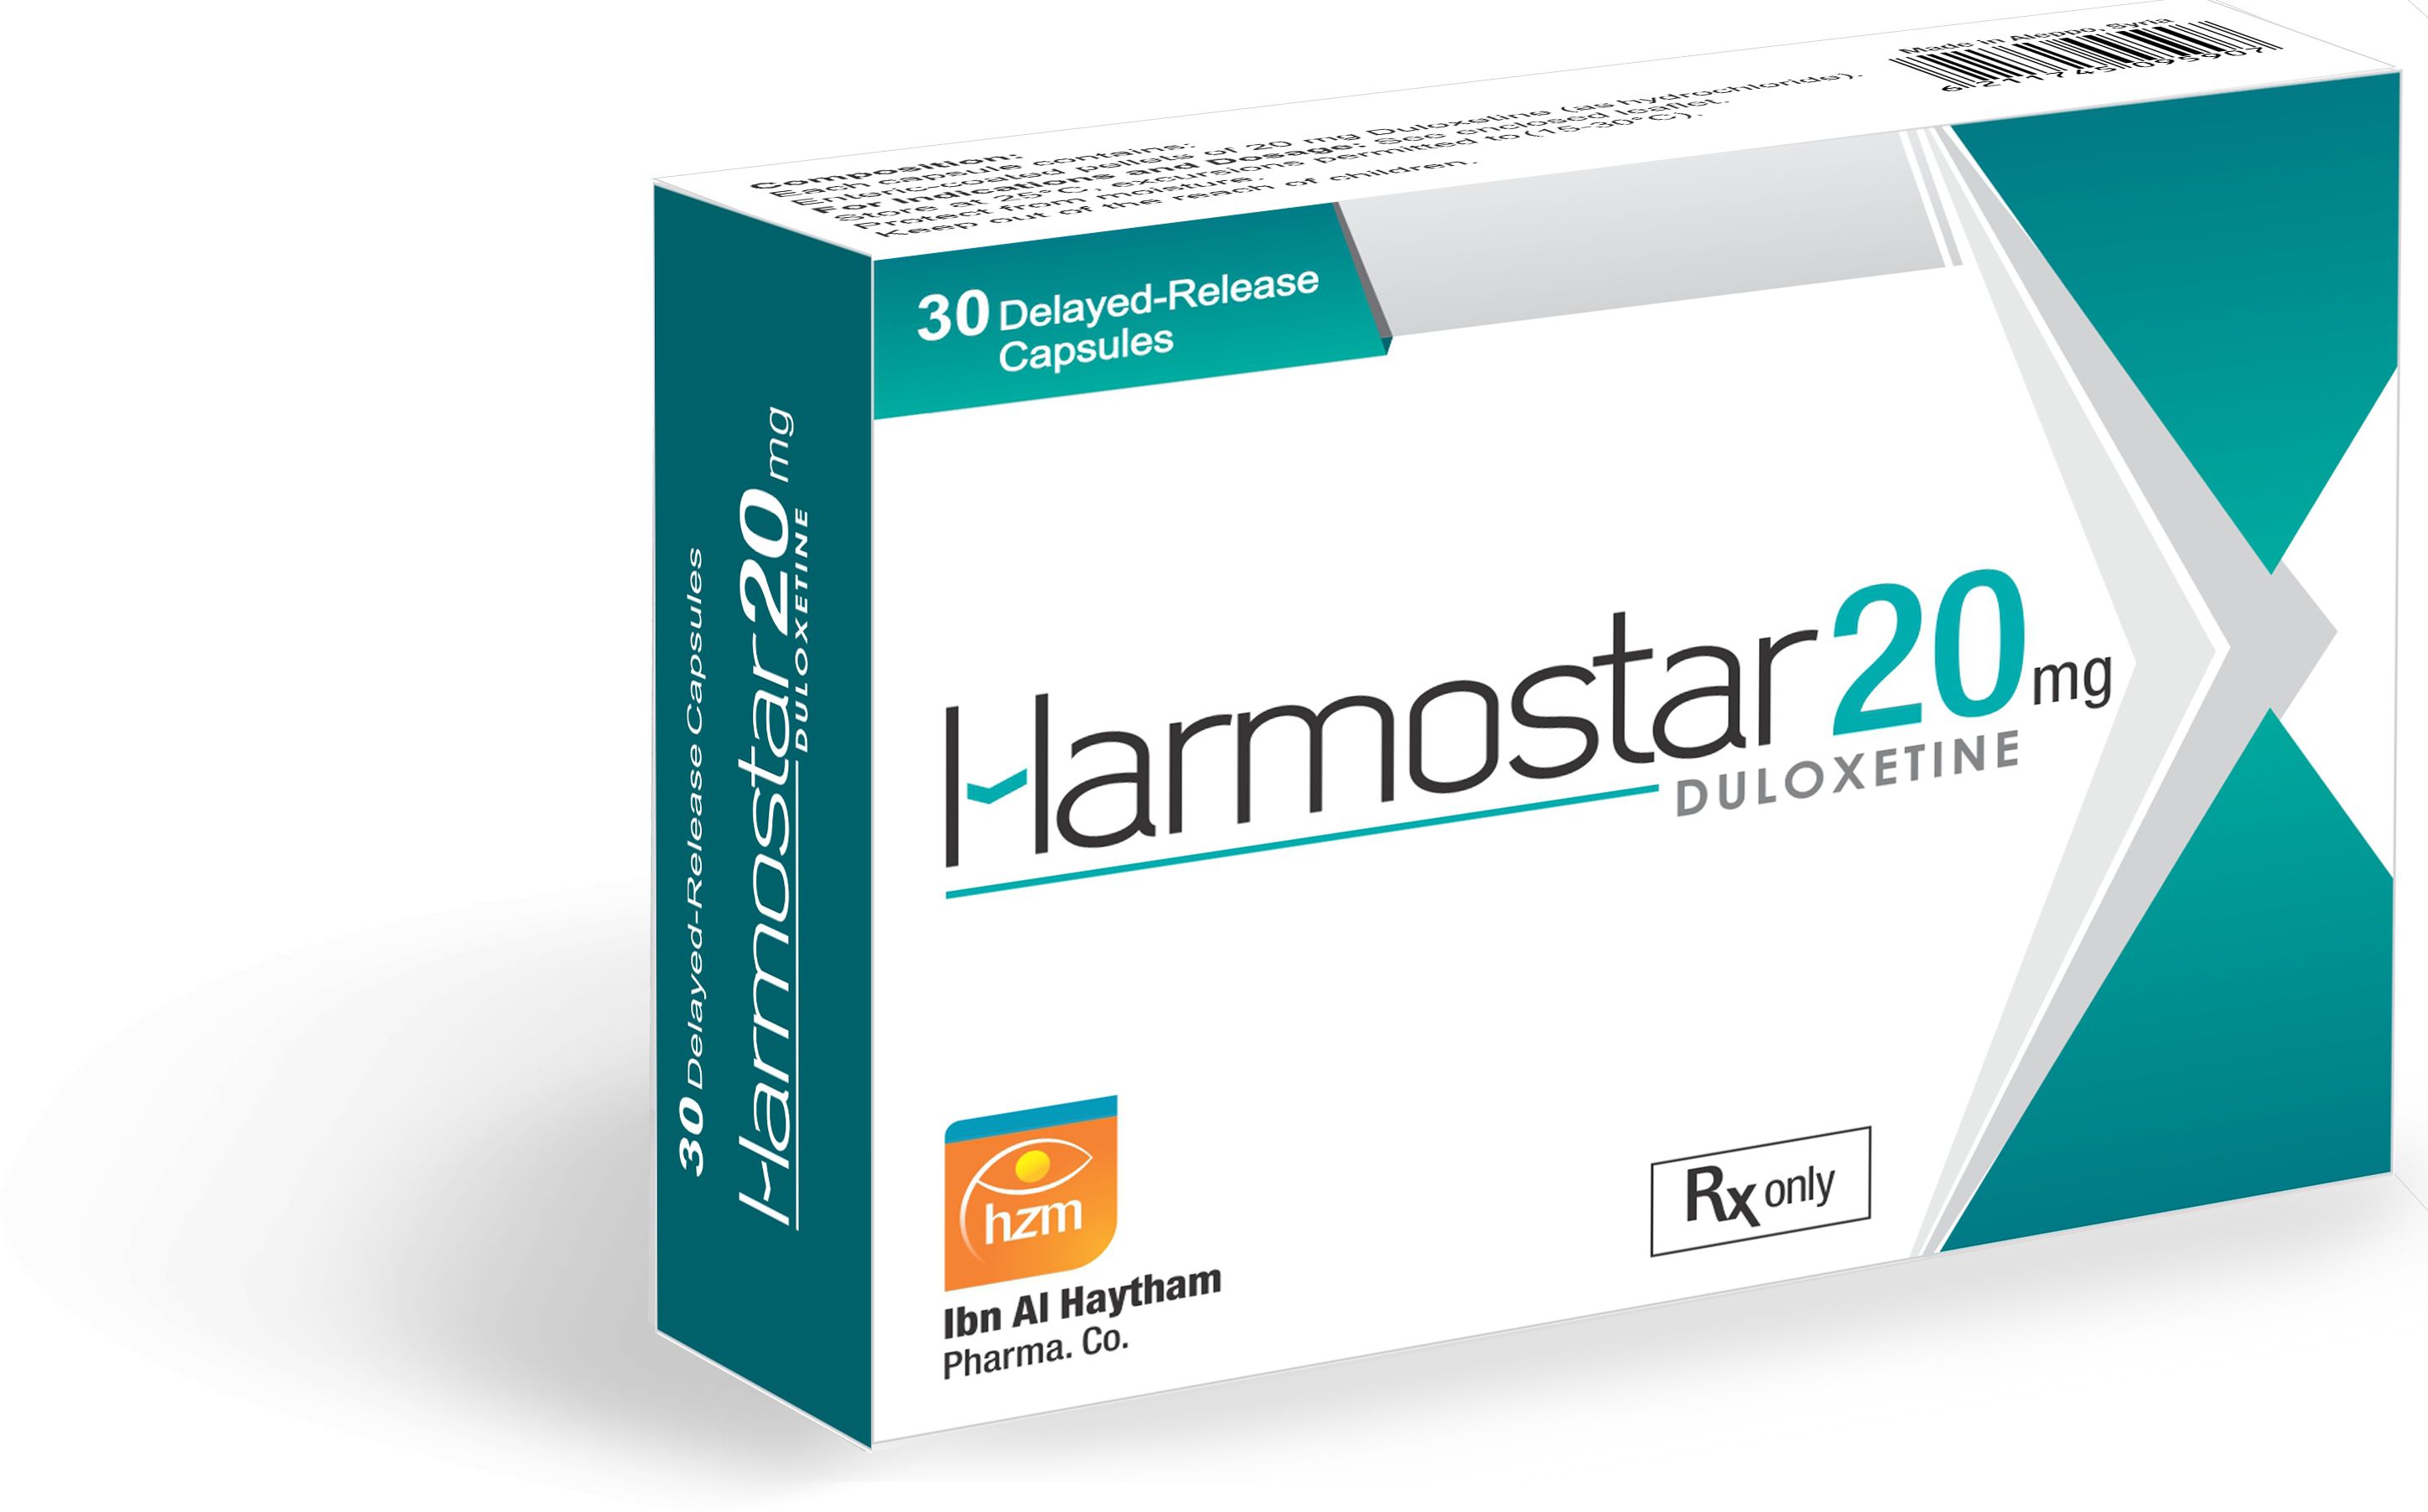 Harmostar 20 mg